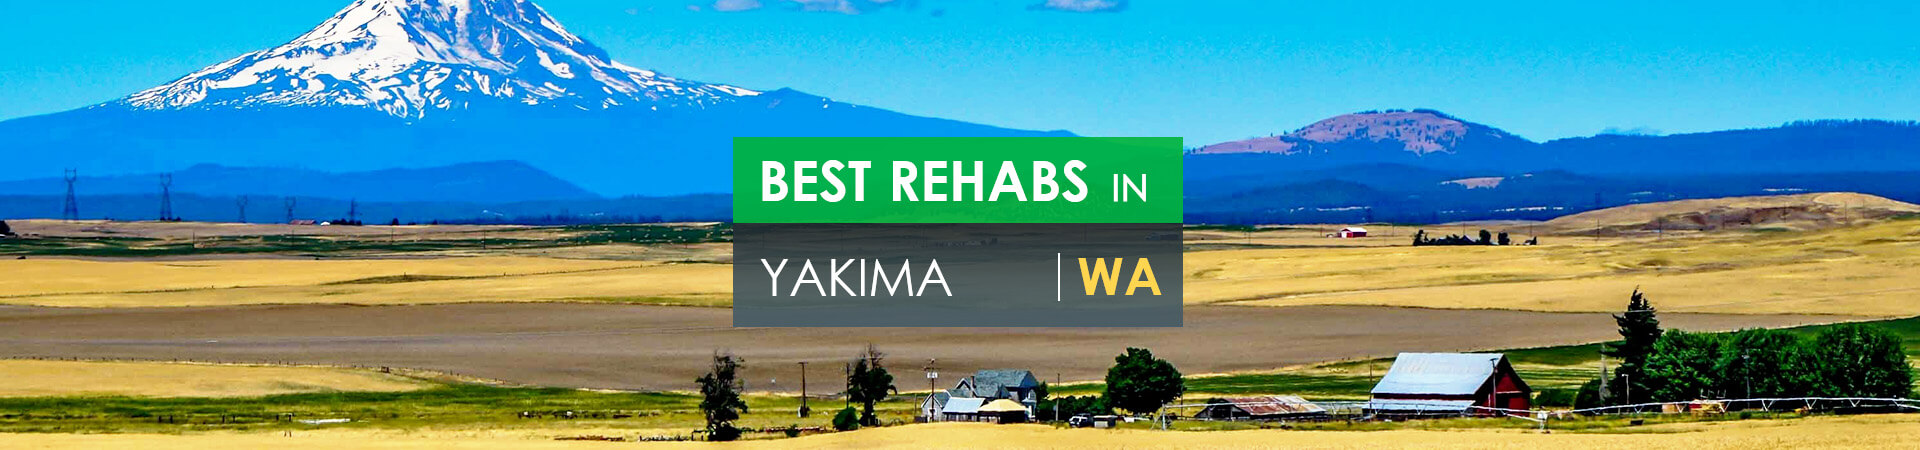 Best rehabs in Yakima, WA